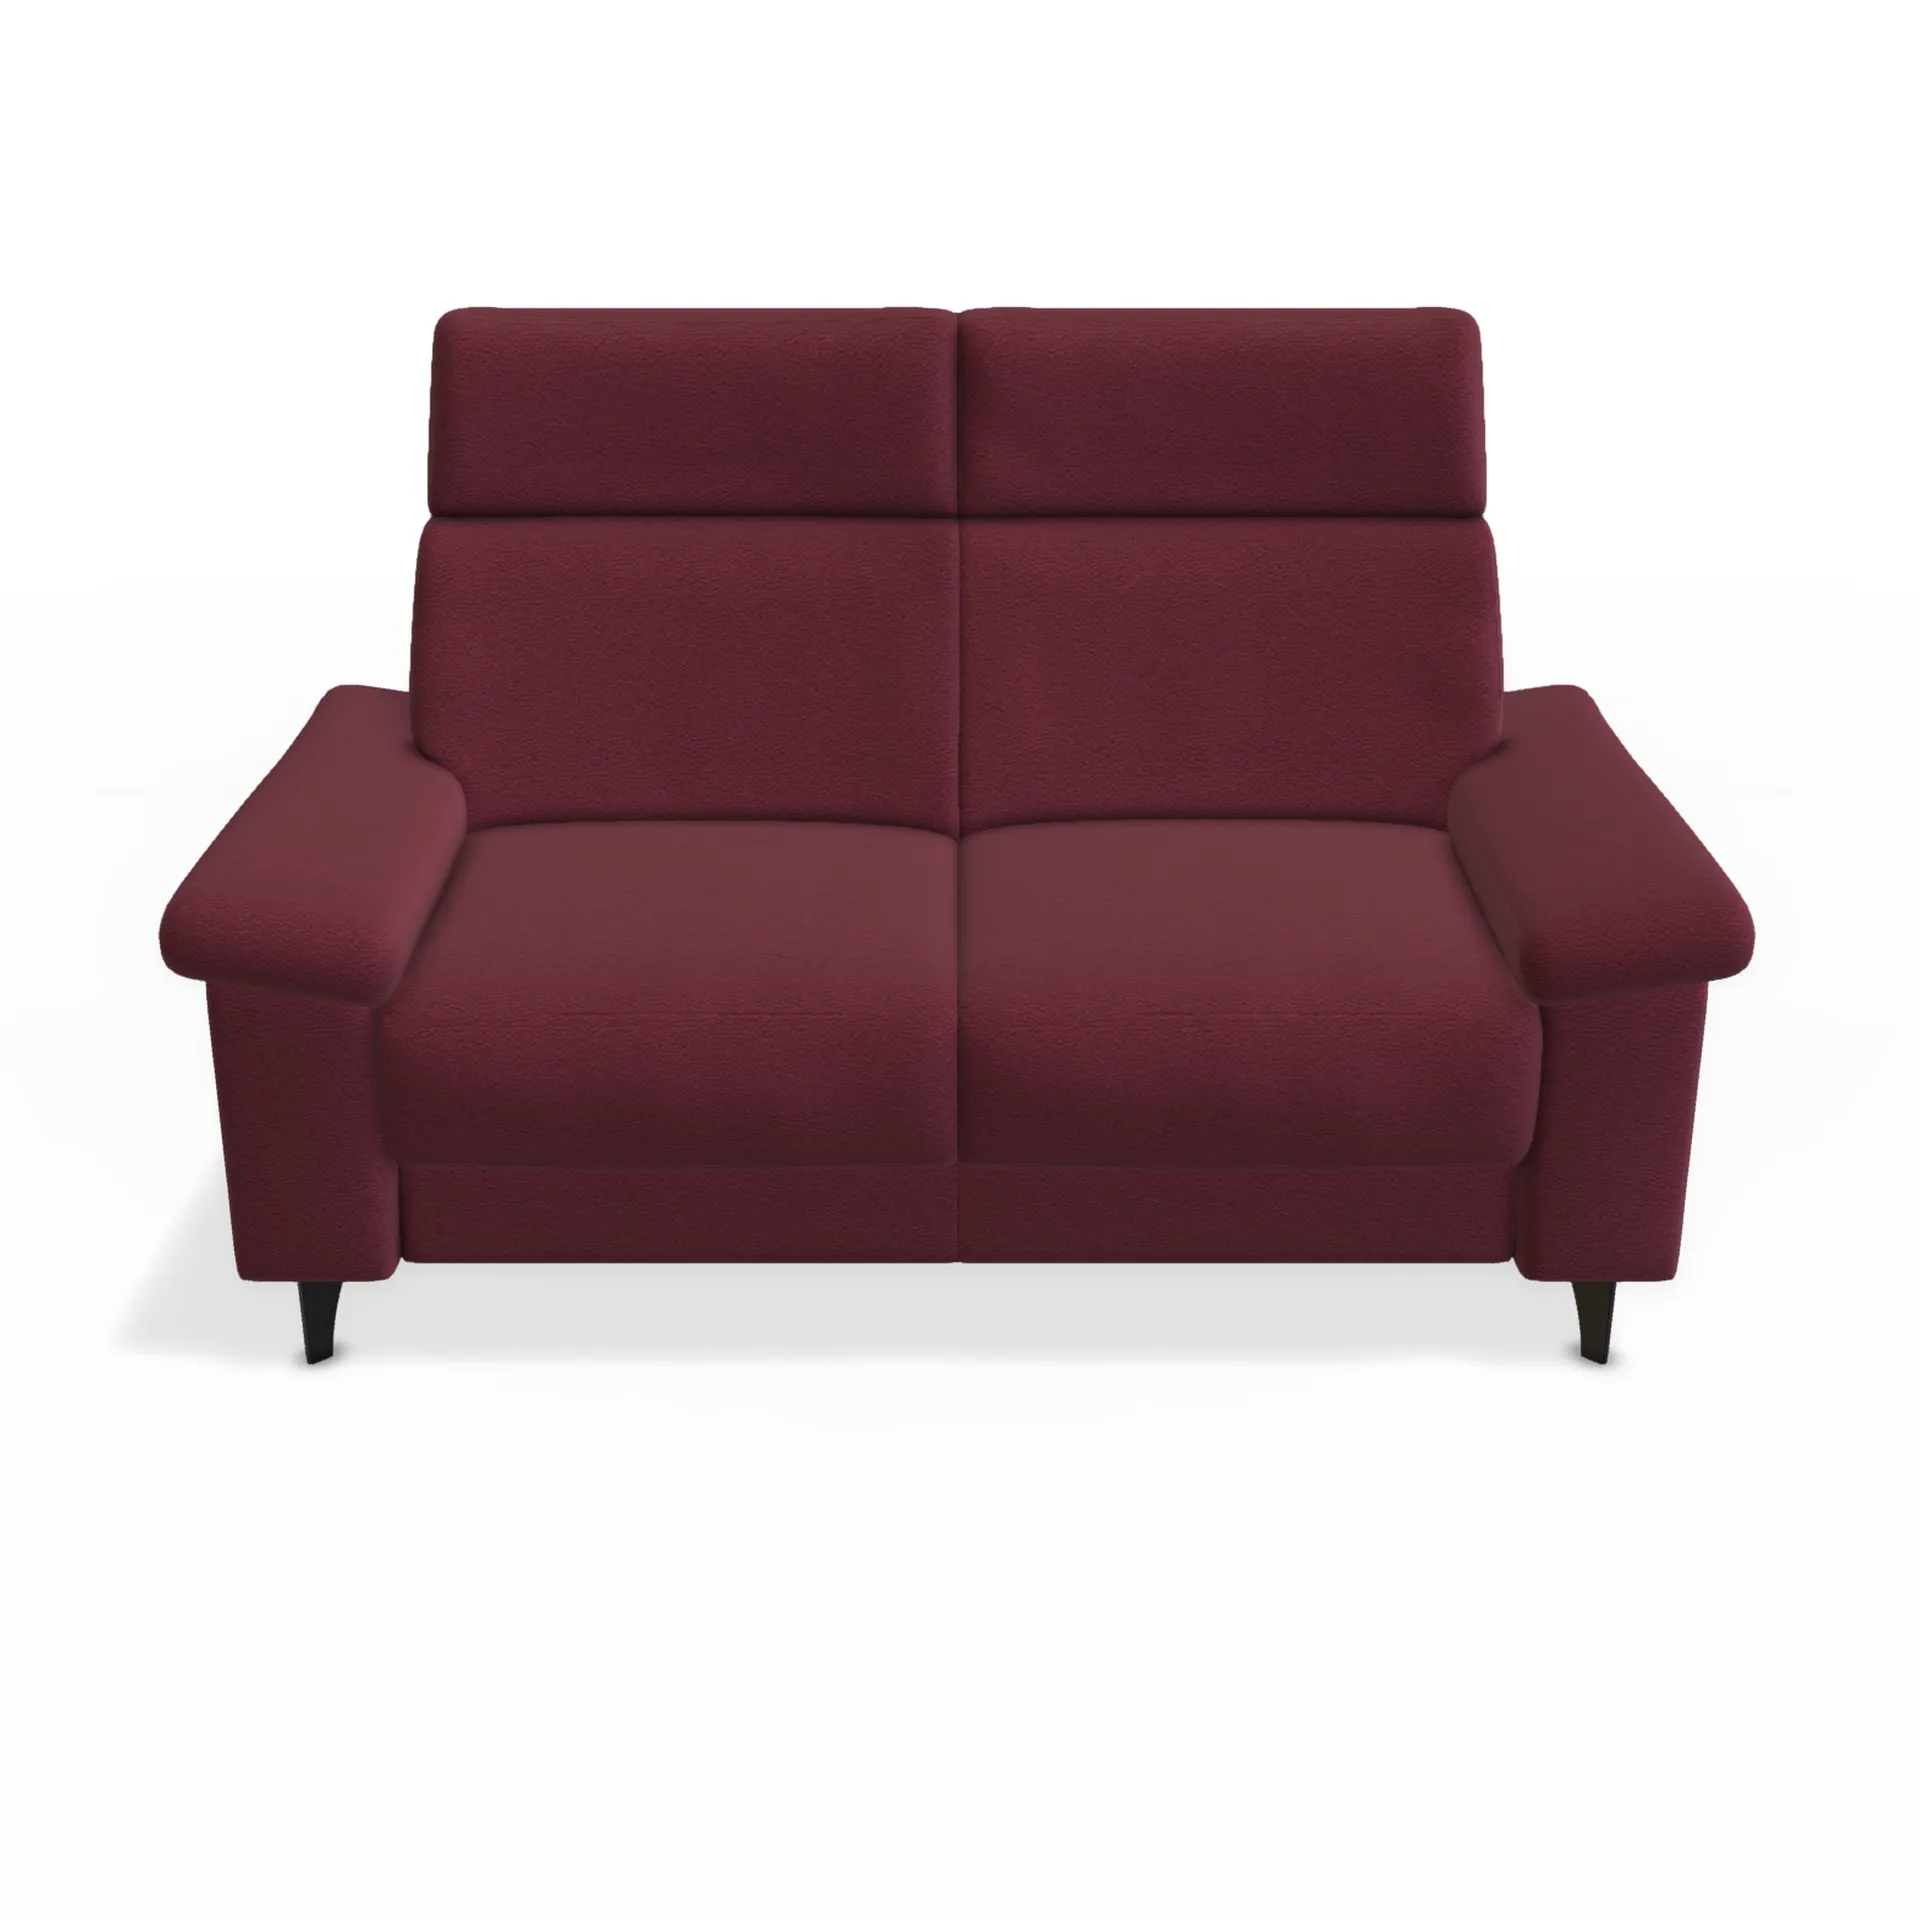 modernes design auf klassischen funktionen in sofa moreli